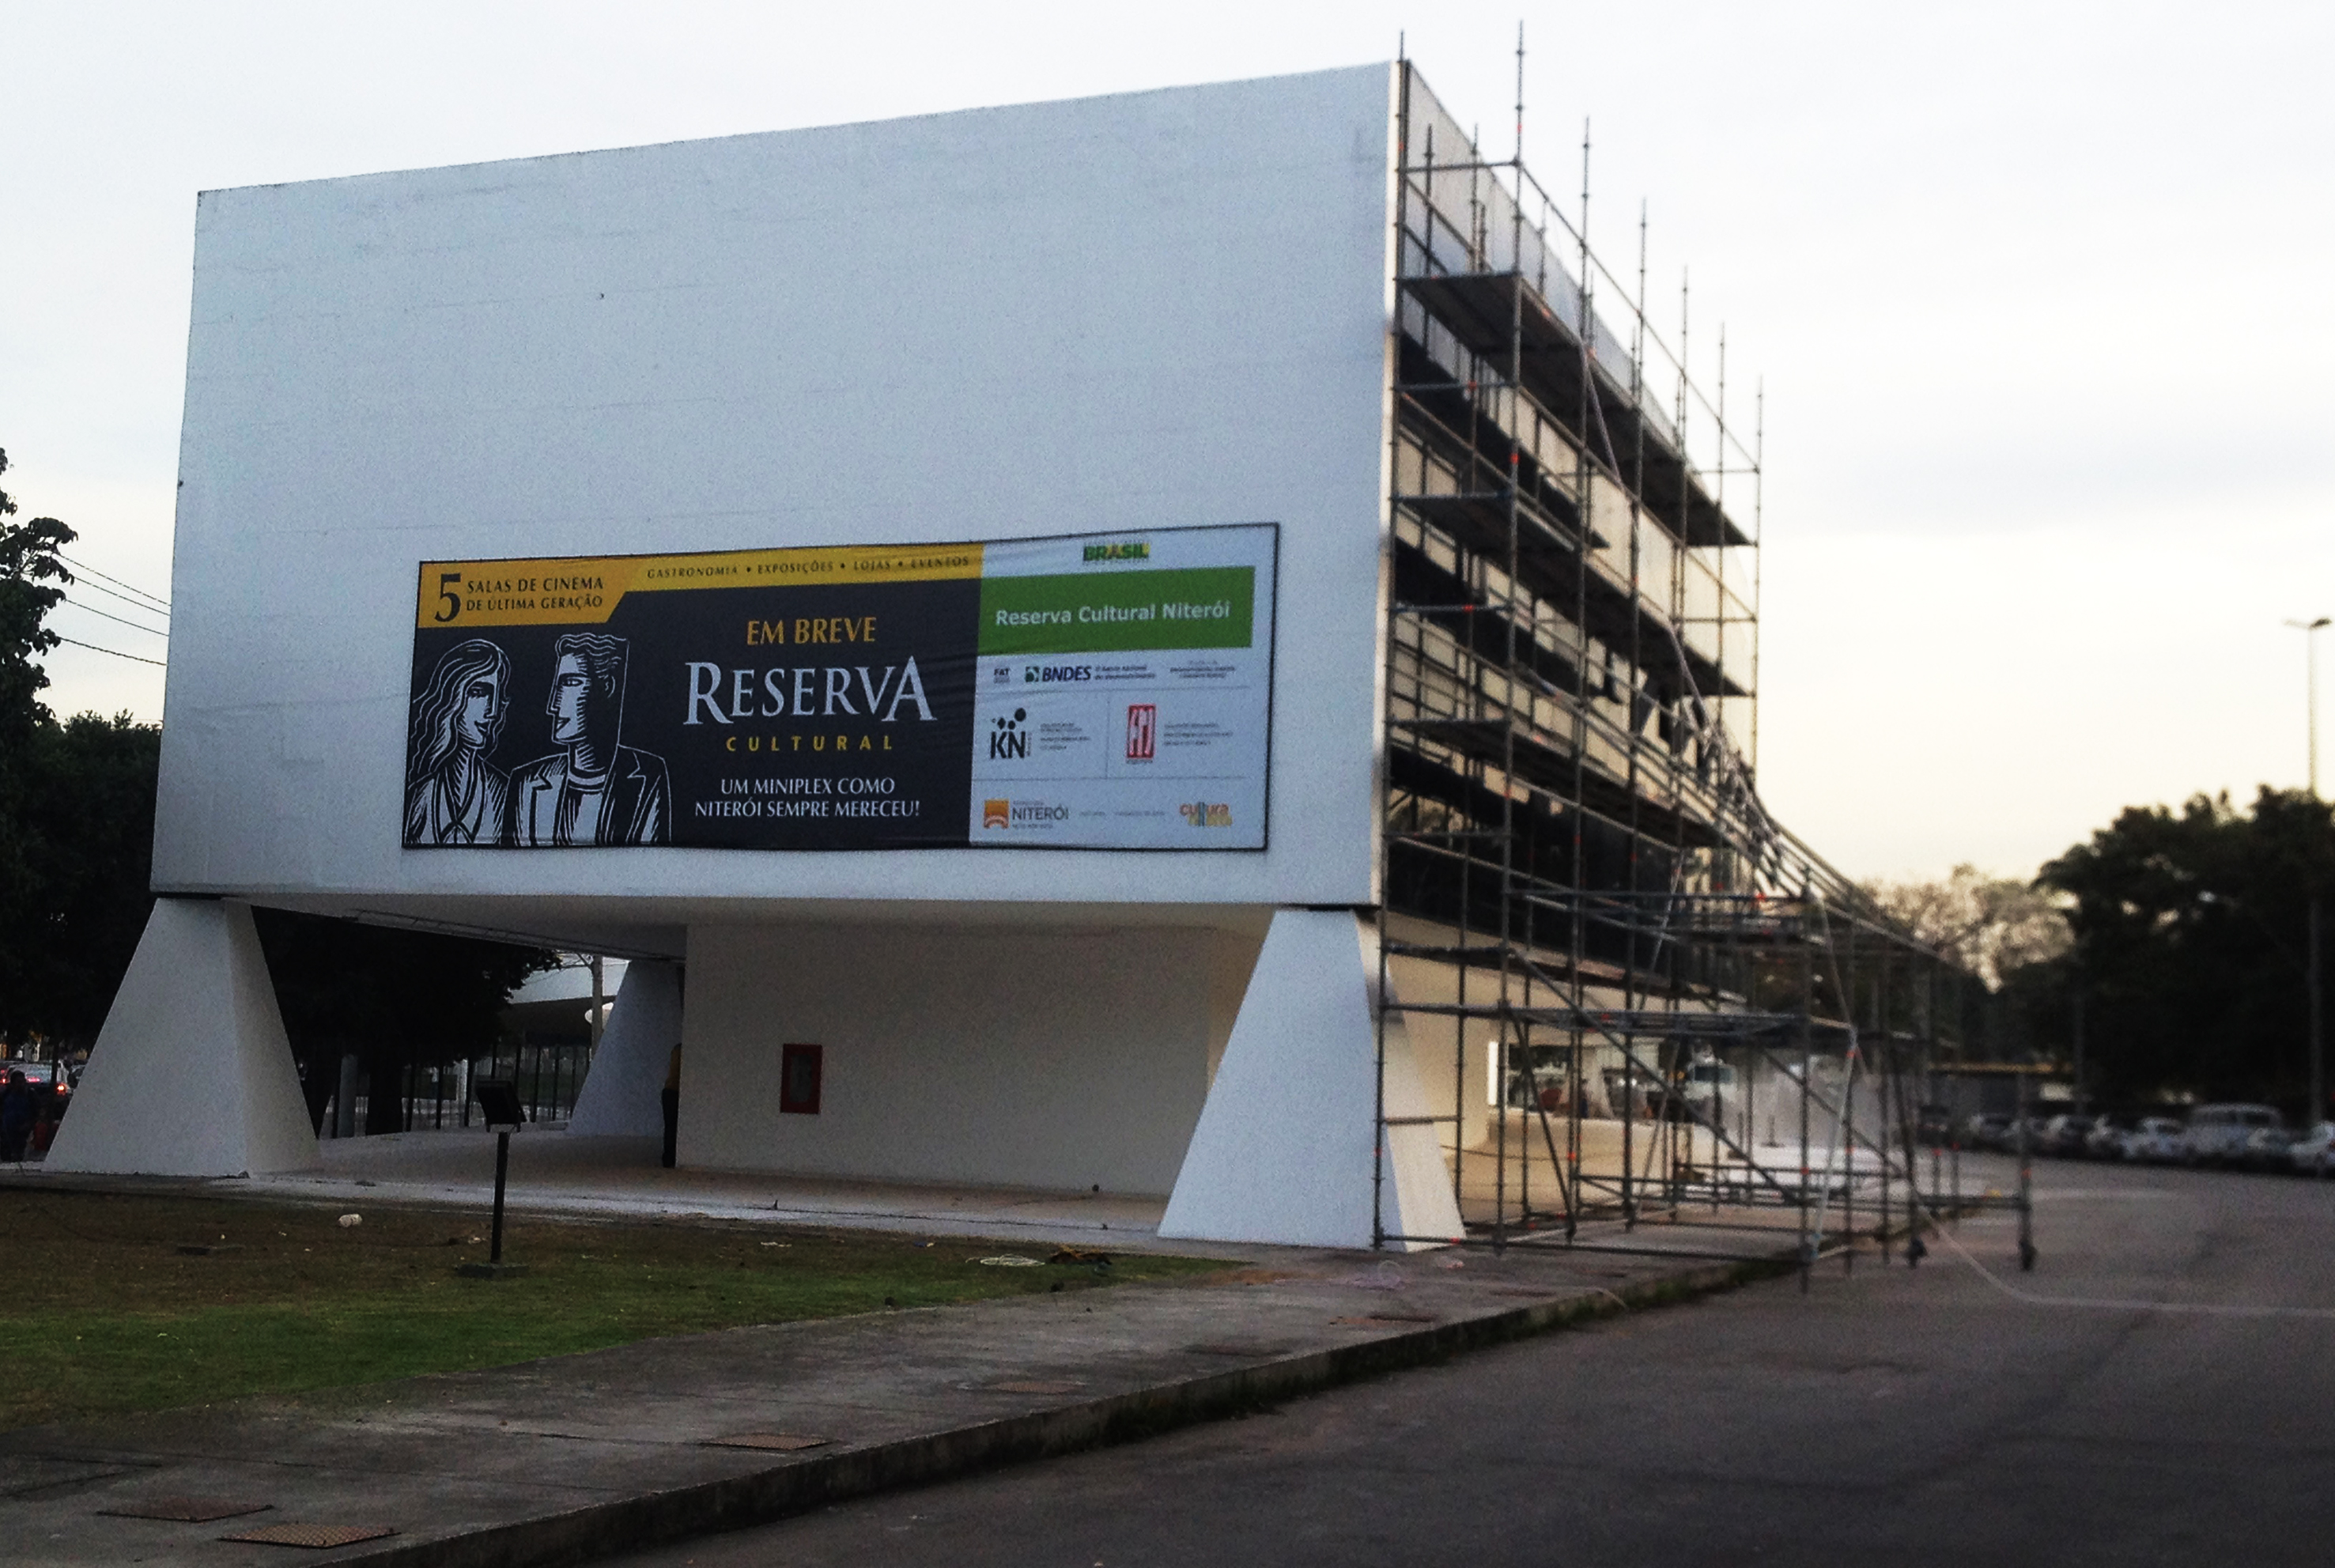  Petrobras Film Center, der har været lukket i 11 år, genåbner i Rio